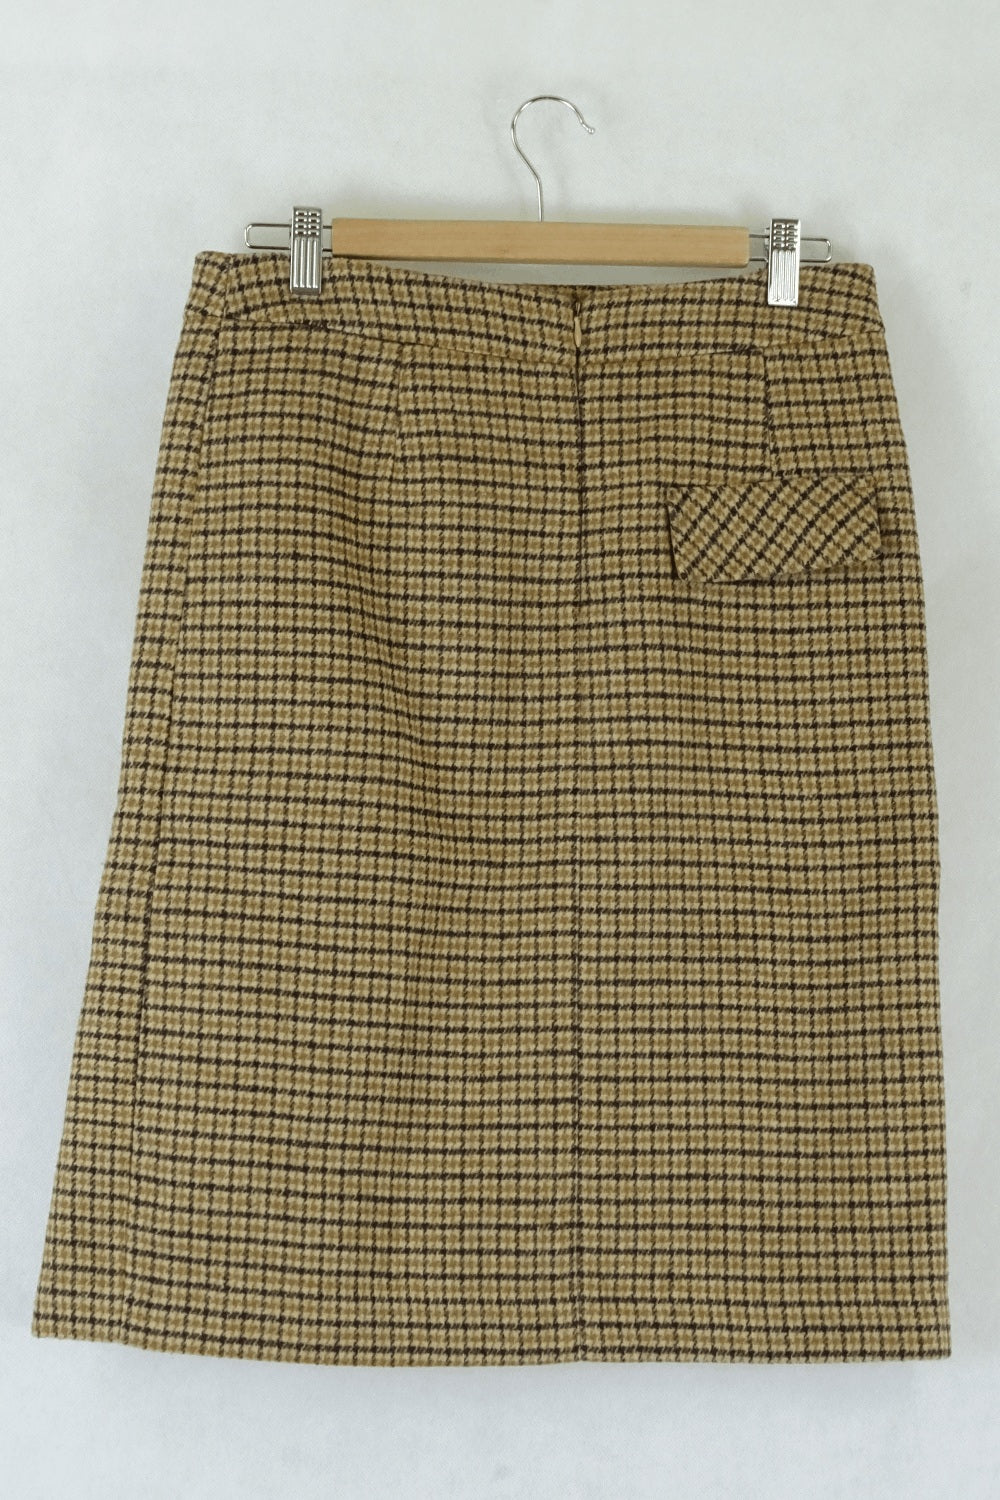 S.Jaien Plaid Skirt L  ( Best Fits 10)